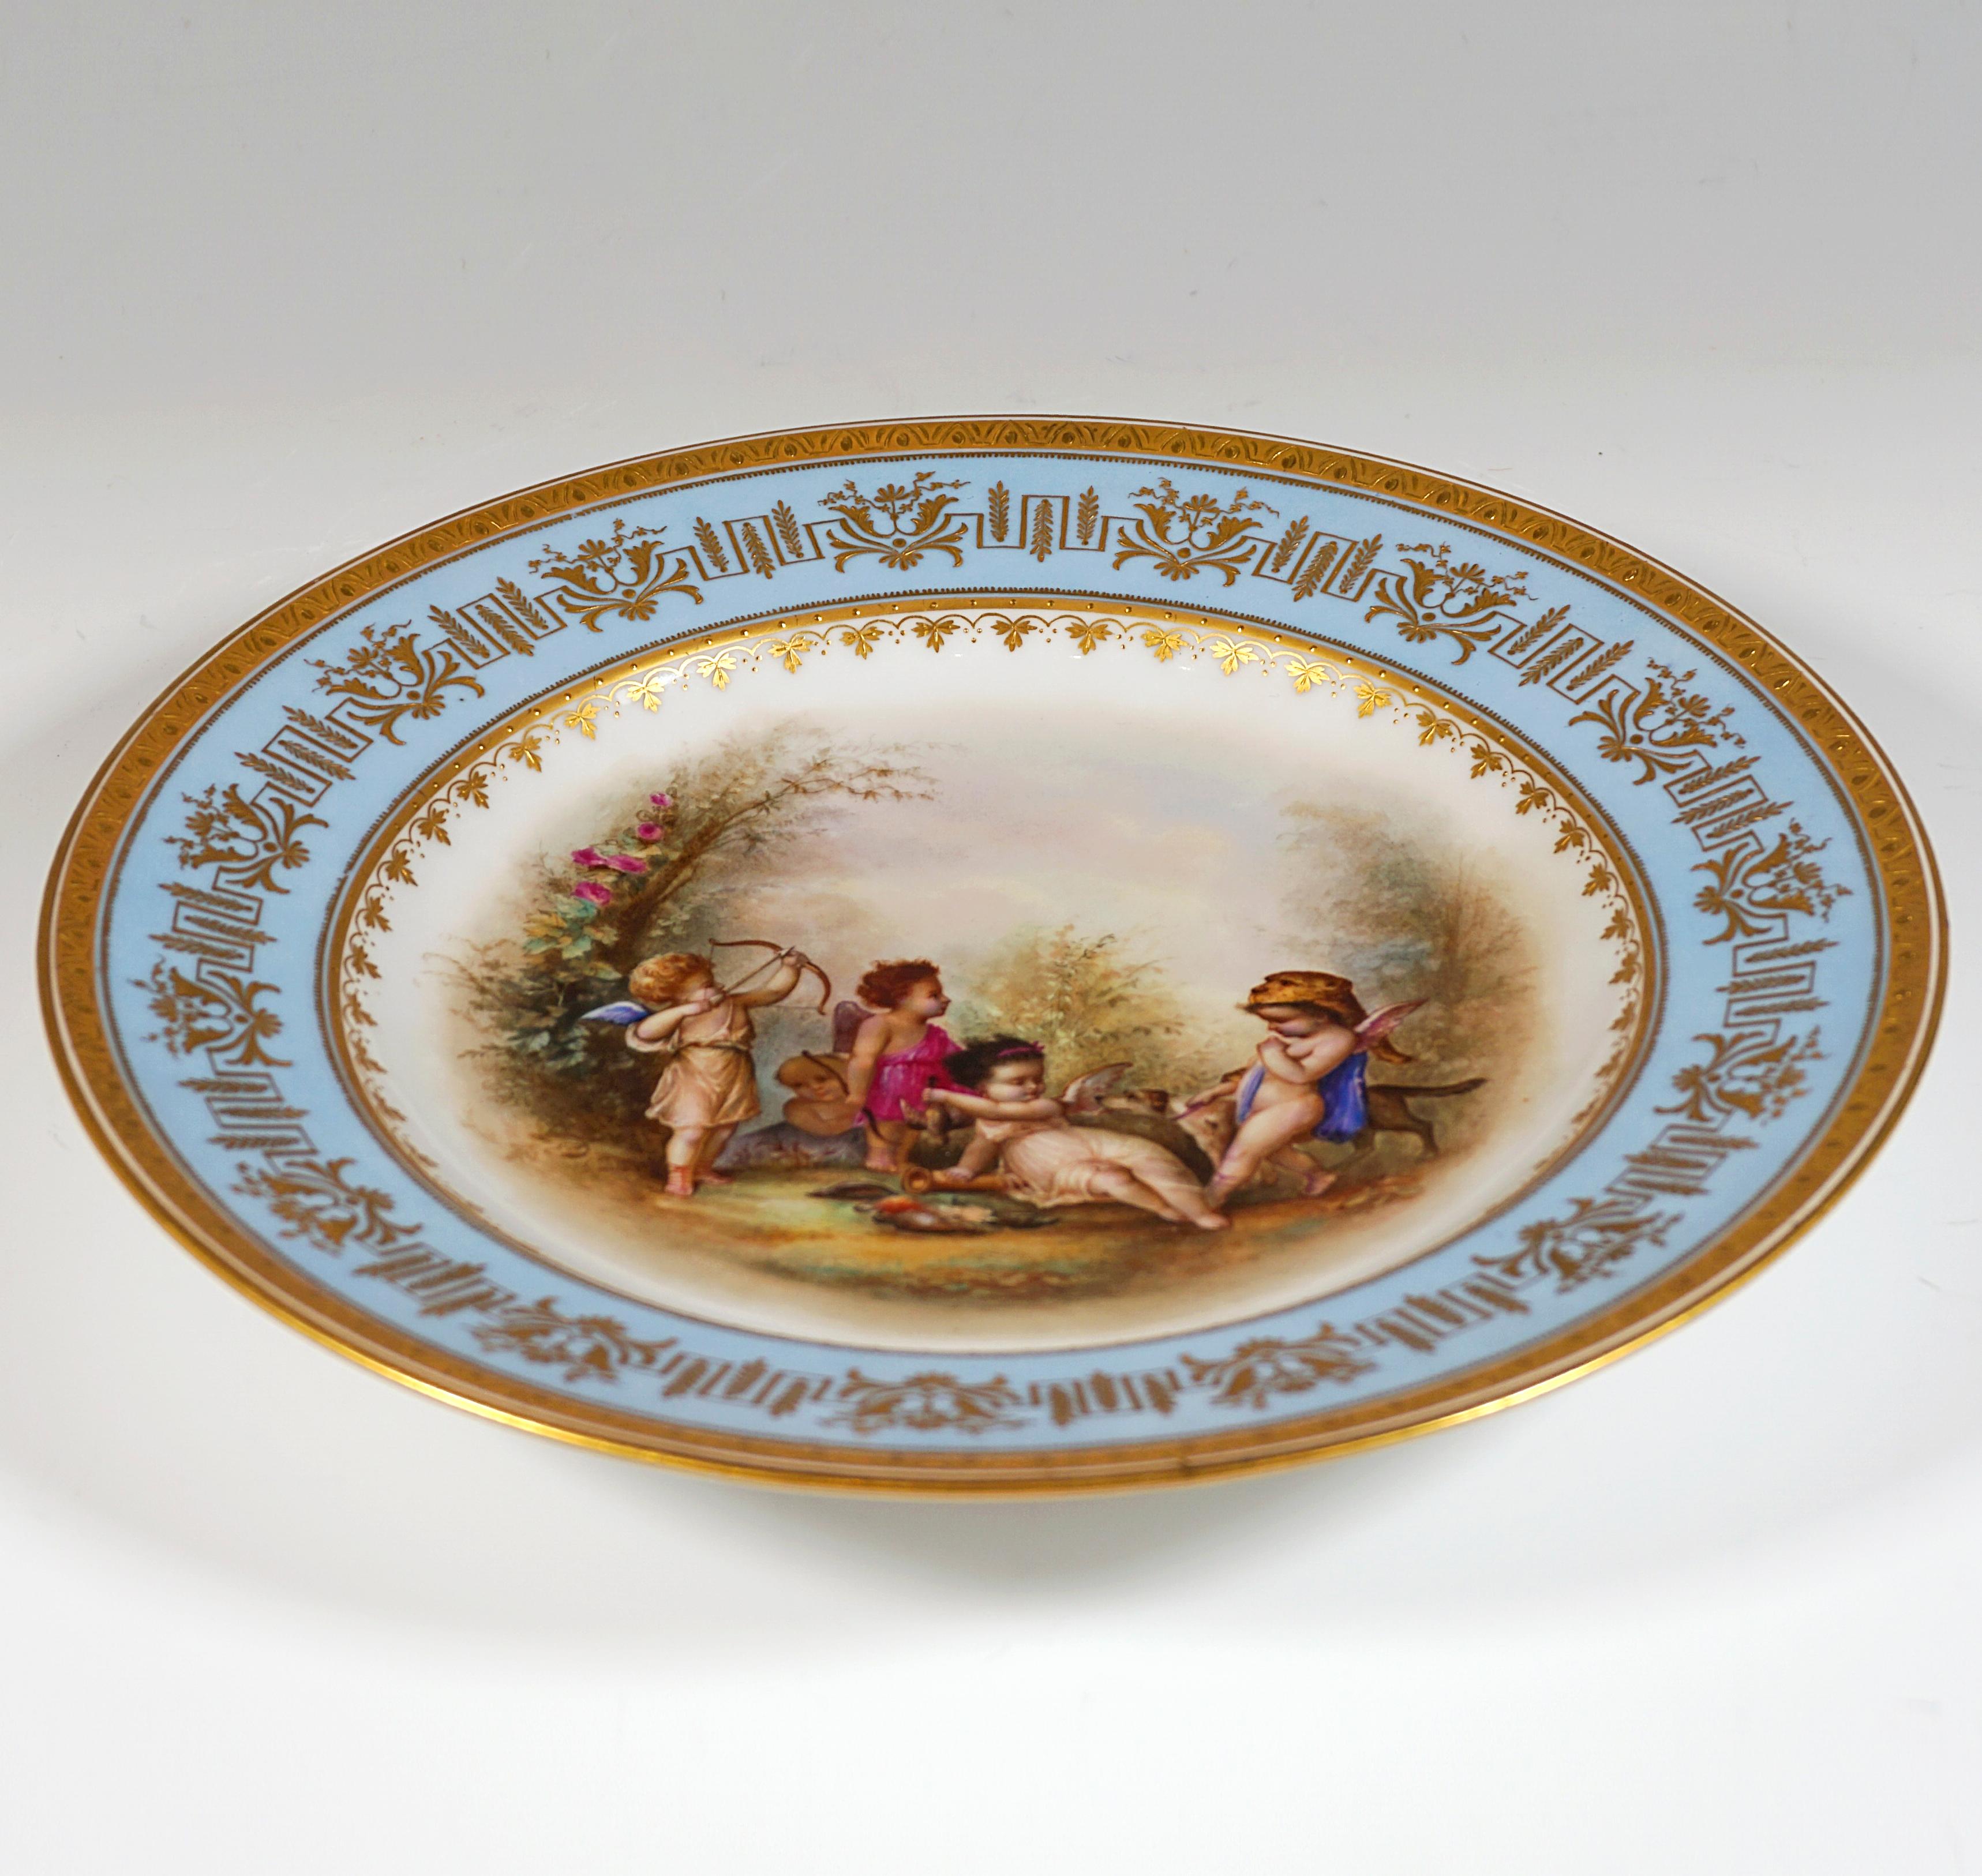 Plato de esplendor de porcelana imperial vienesa, Jugando a los cupidos como cazadores, 1805 Austríaco en venta